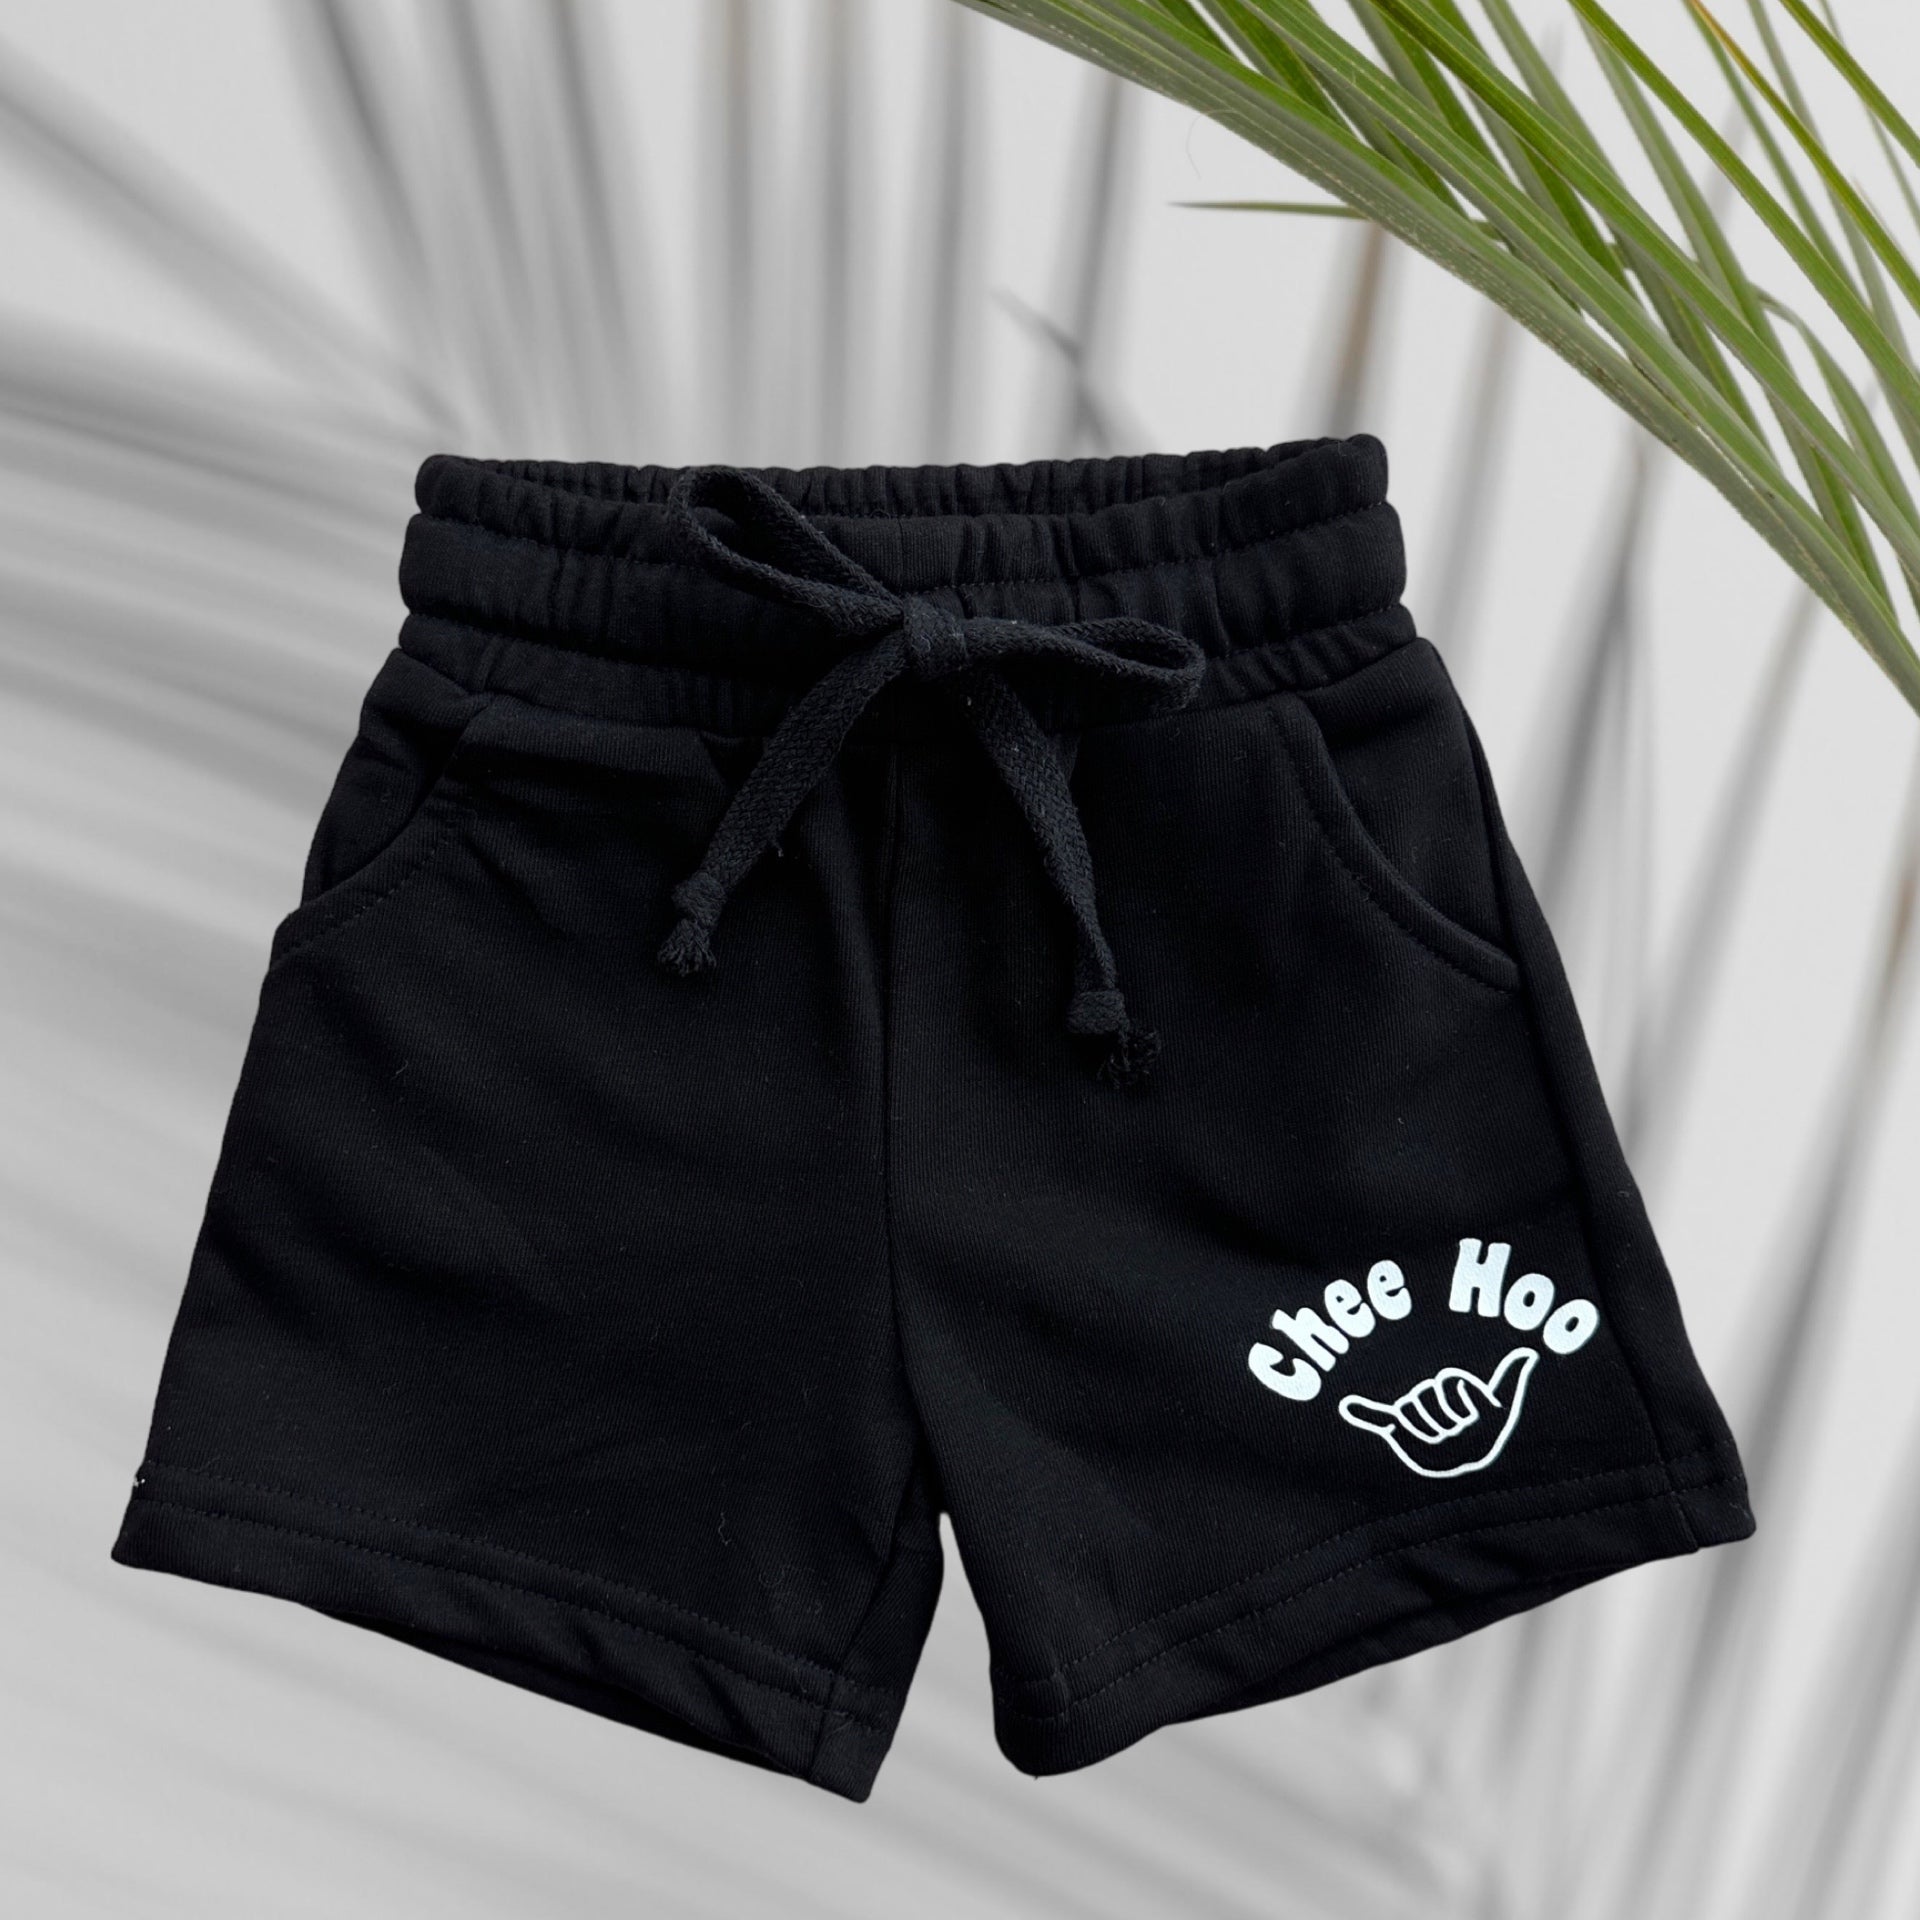 Black Chee Hoo Shorts - Sweet Sweet Honey Hawaii